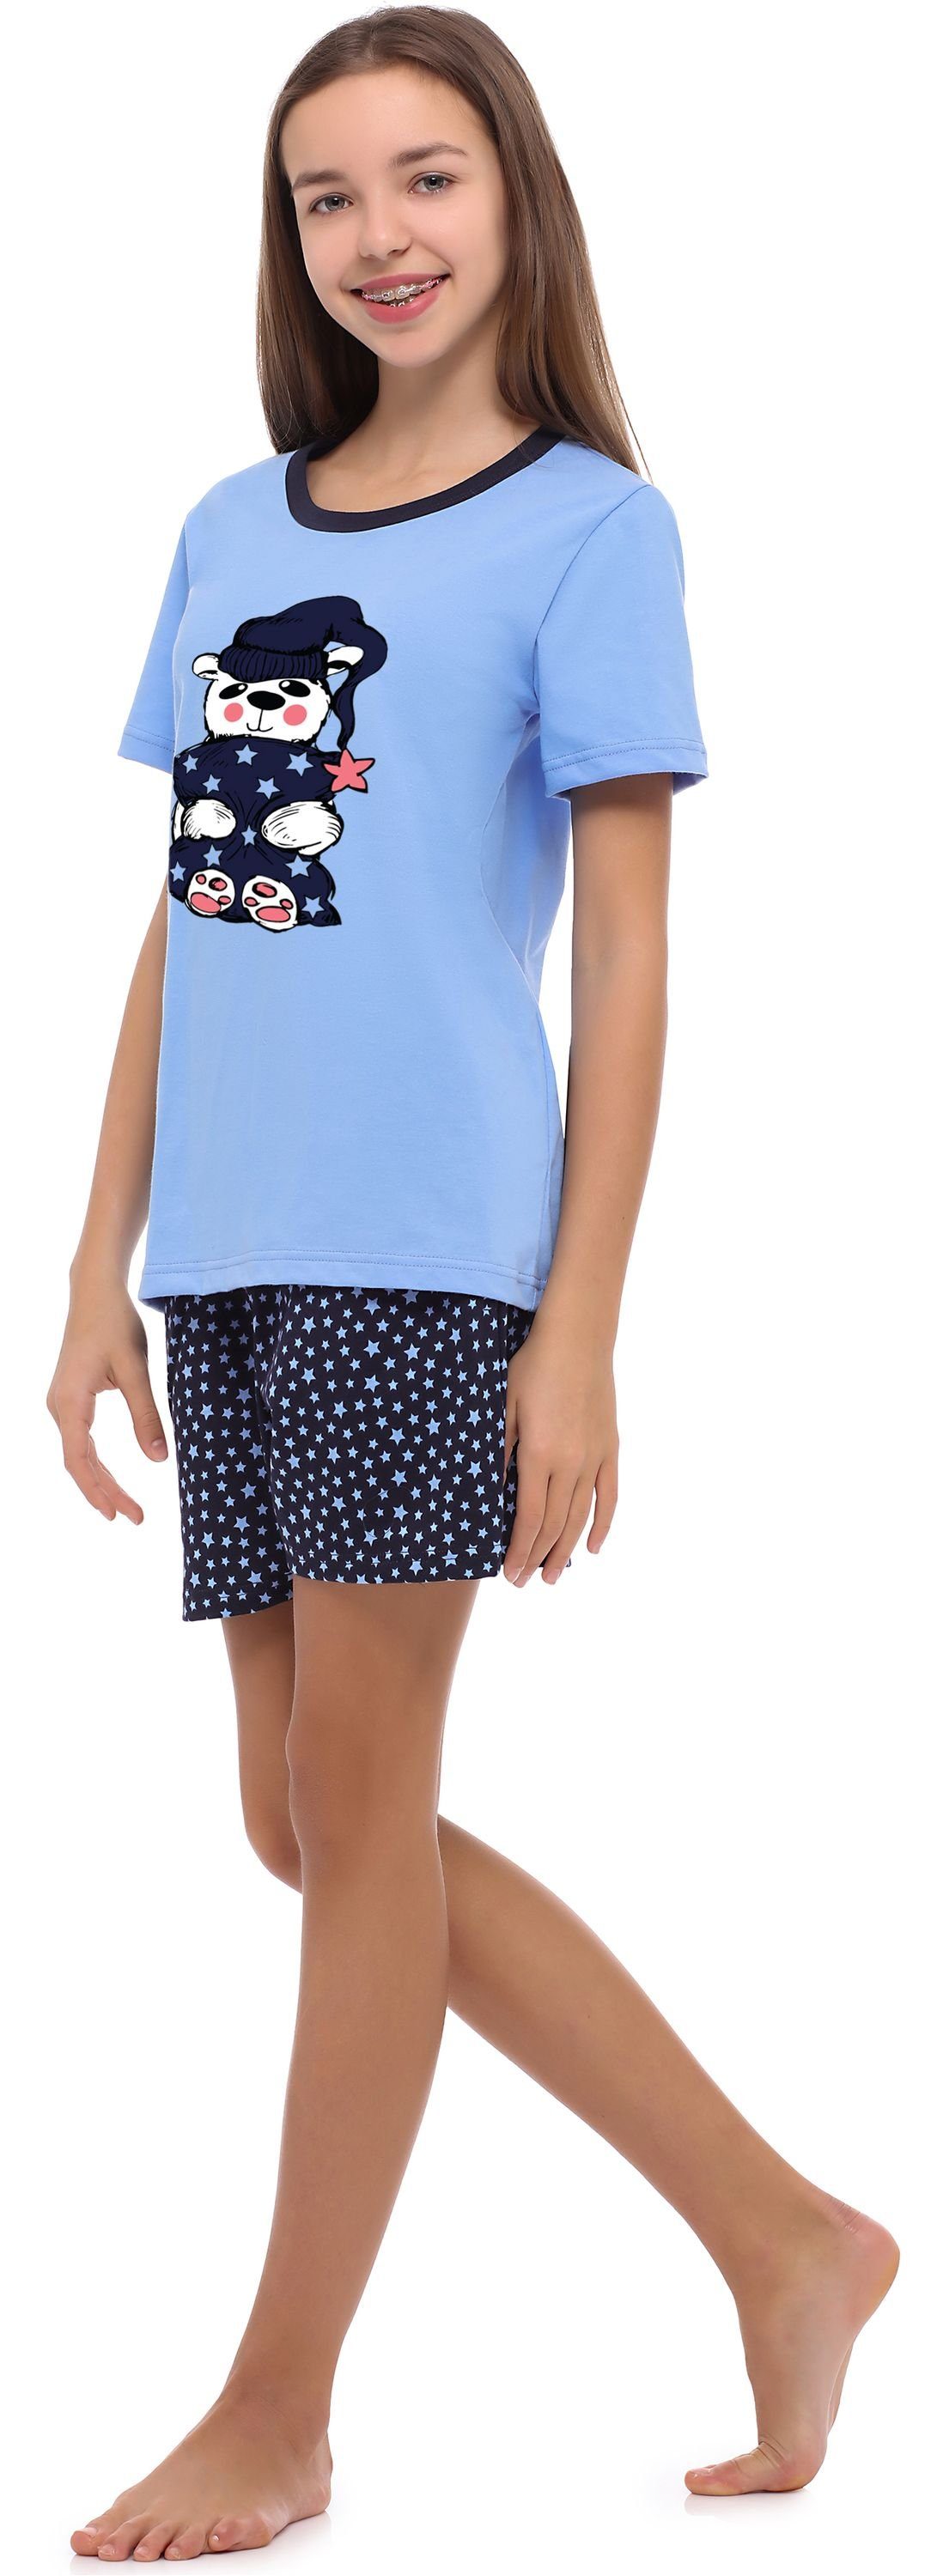 Mädchen Jugend Merry Style Schlafanzug MS10-241 Schlafanzug Blau/Sterne